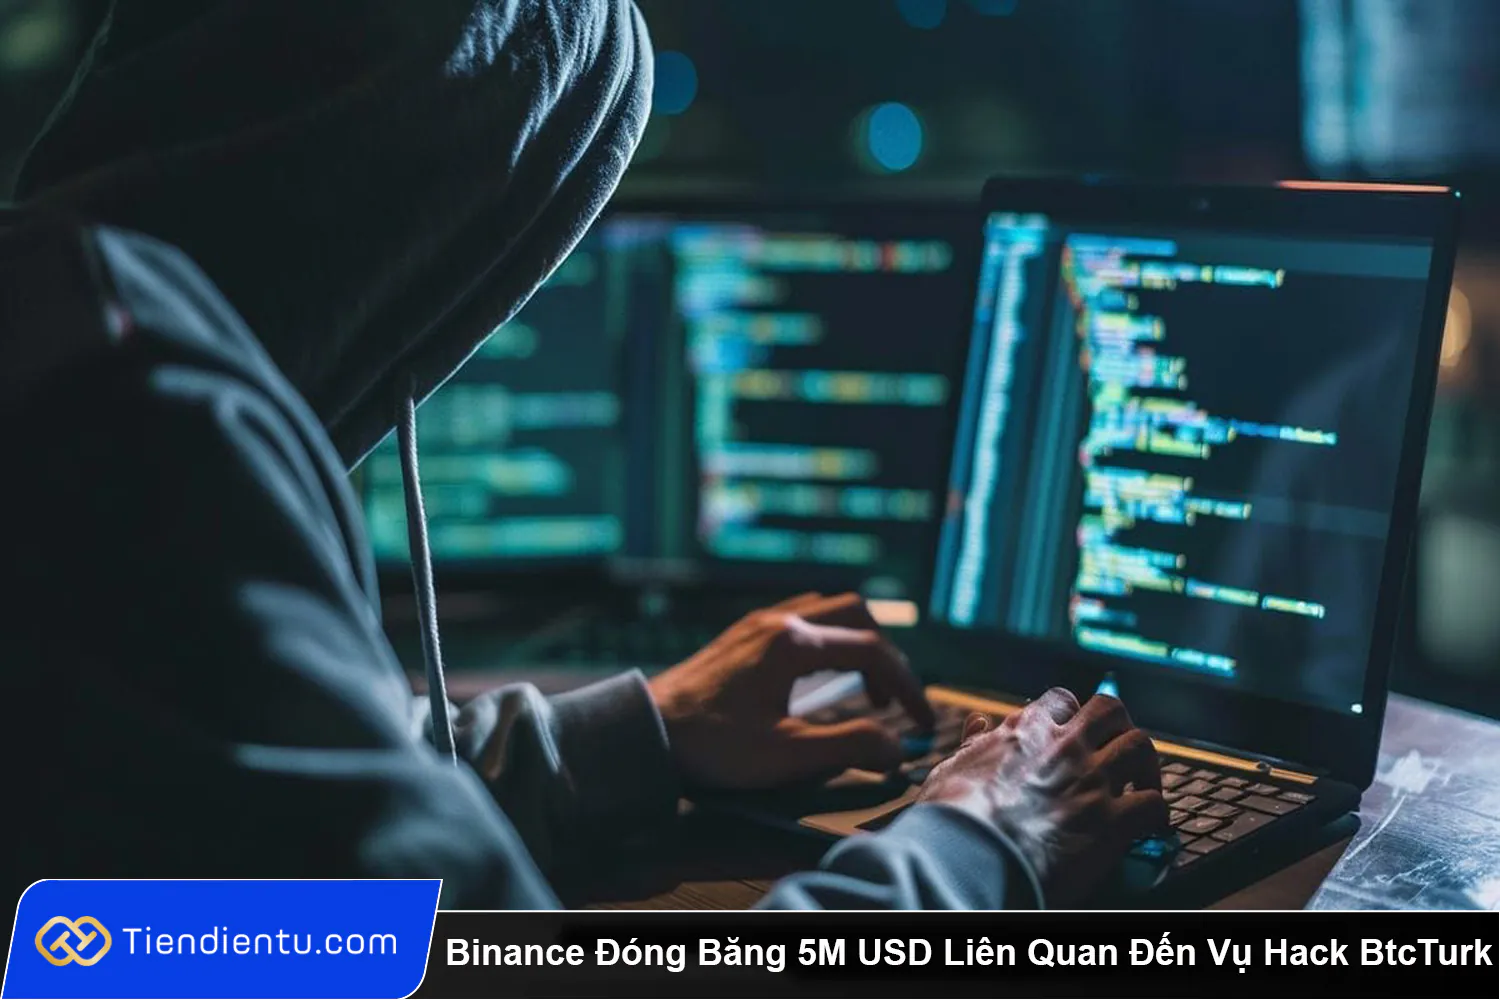 Binance Dong Bang 5M USD Lien Quan Den Vu Hack BtcTurk